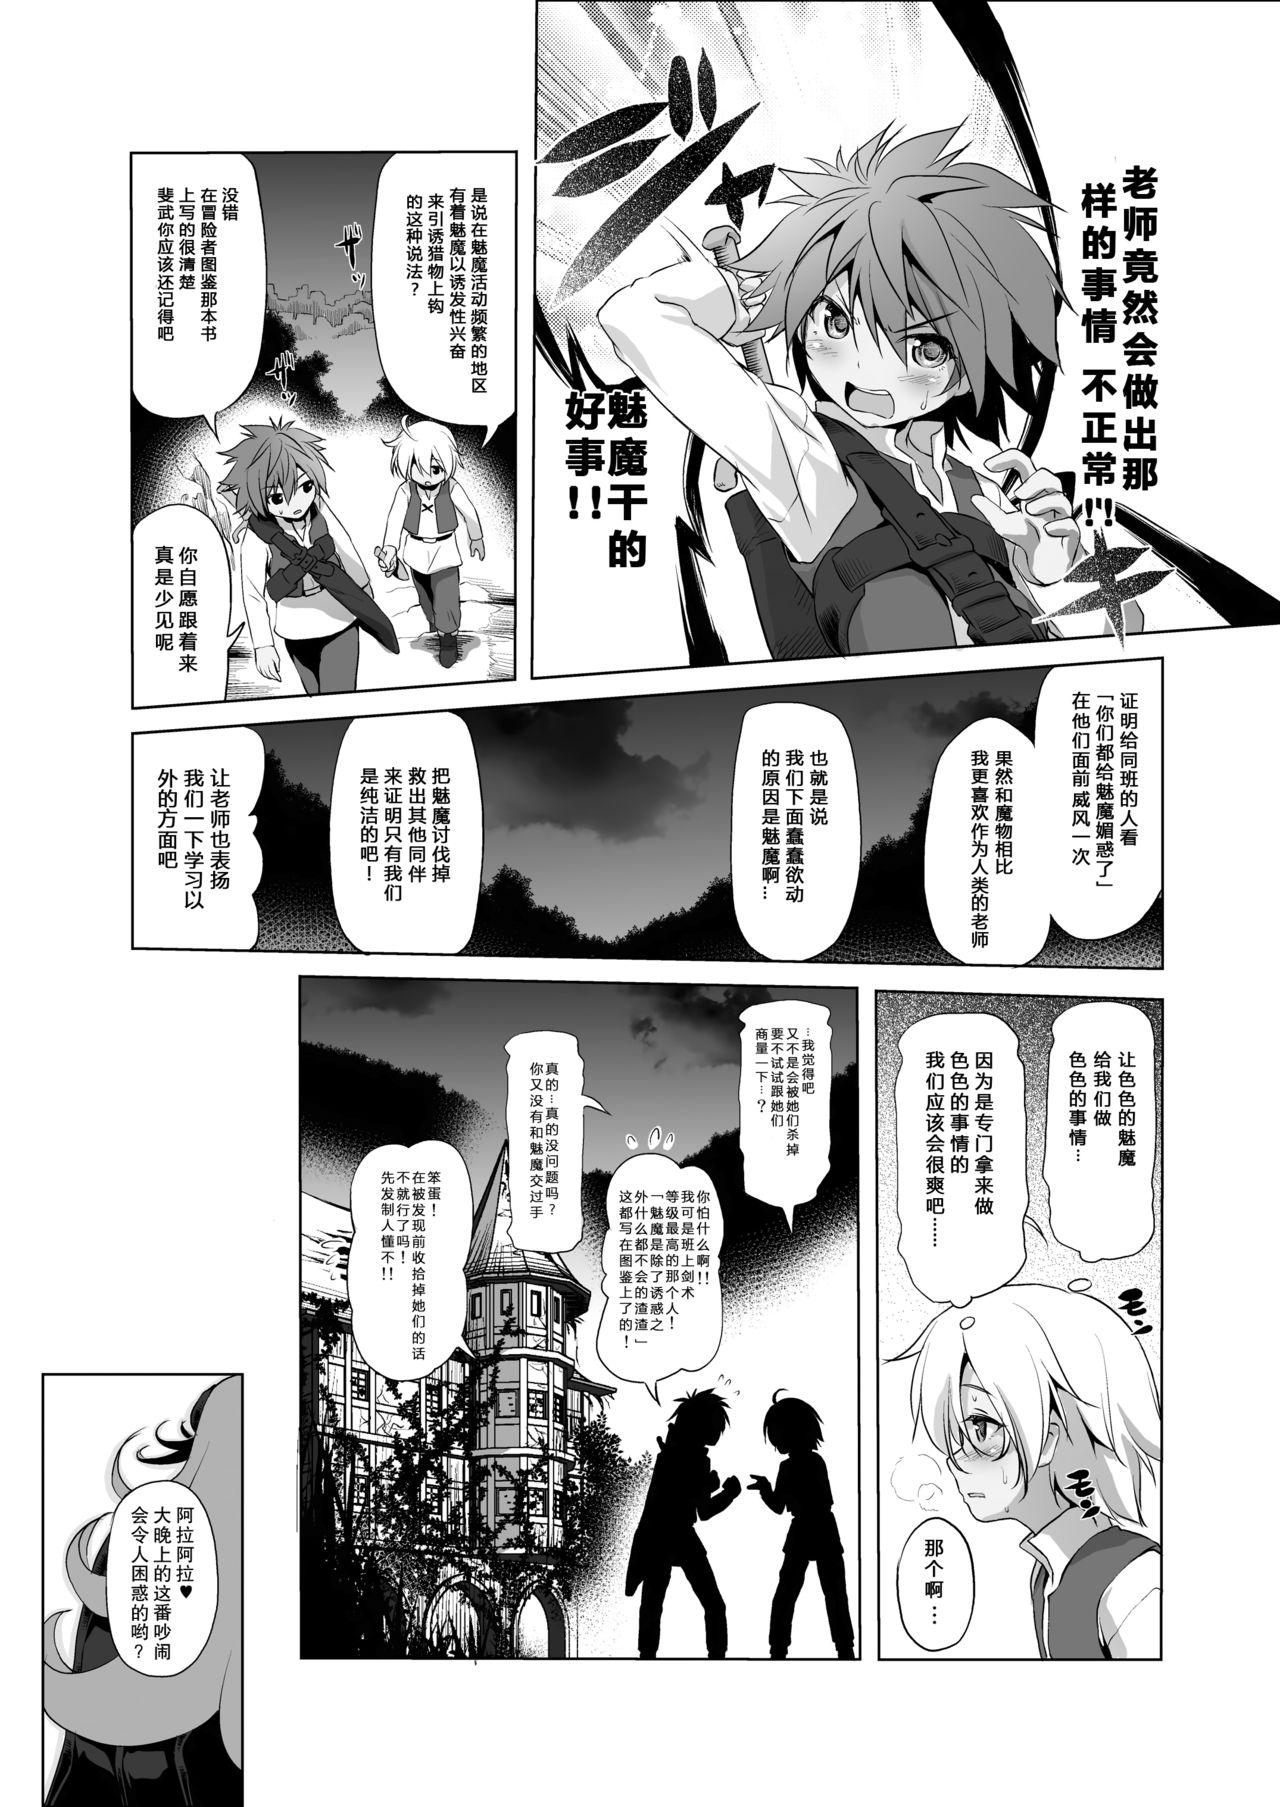 Toys Makotoni Zannen desu ga Bouken no Sho 3 wa Kiete Shimaimashita. - Original Masturbate - Page 11